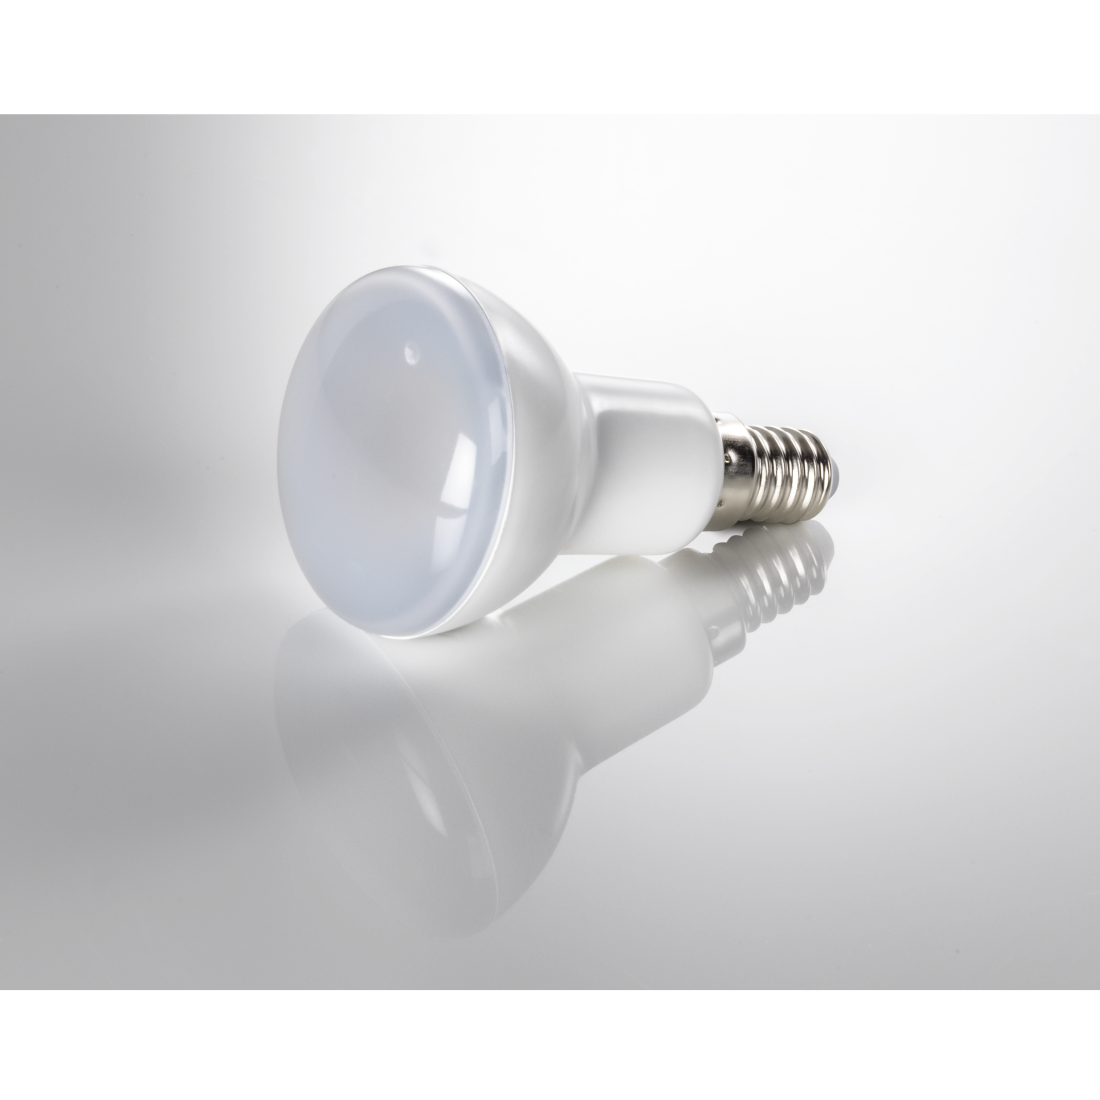 abx3 Druckfähige Abbildung 3 - Xavax, LED-Lampe, E14, 400lm ersetzt 35W, Reflektorlampe R50, Warmweiß, 2 Stück